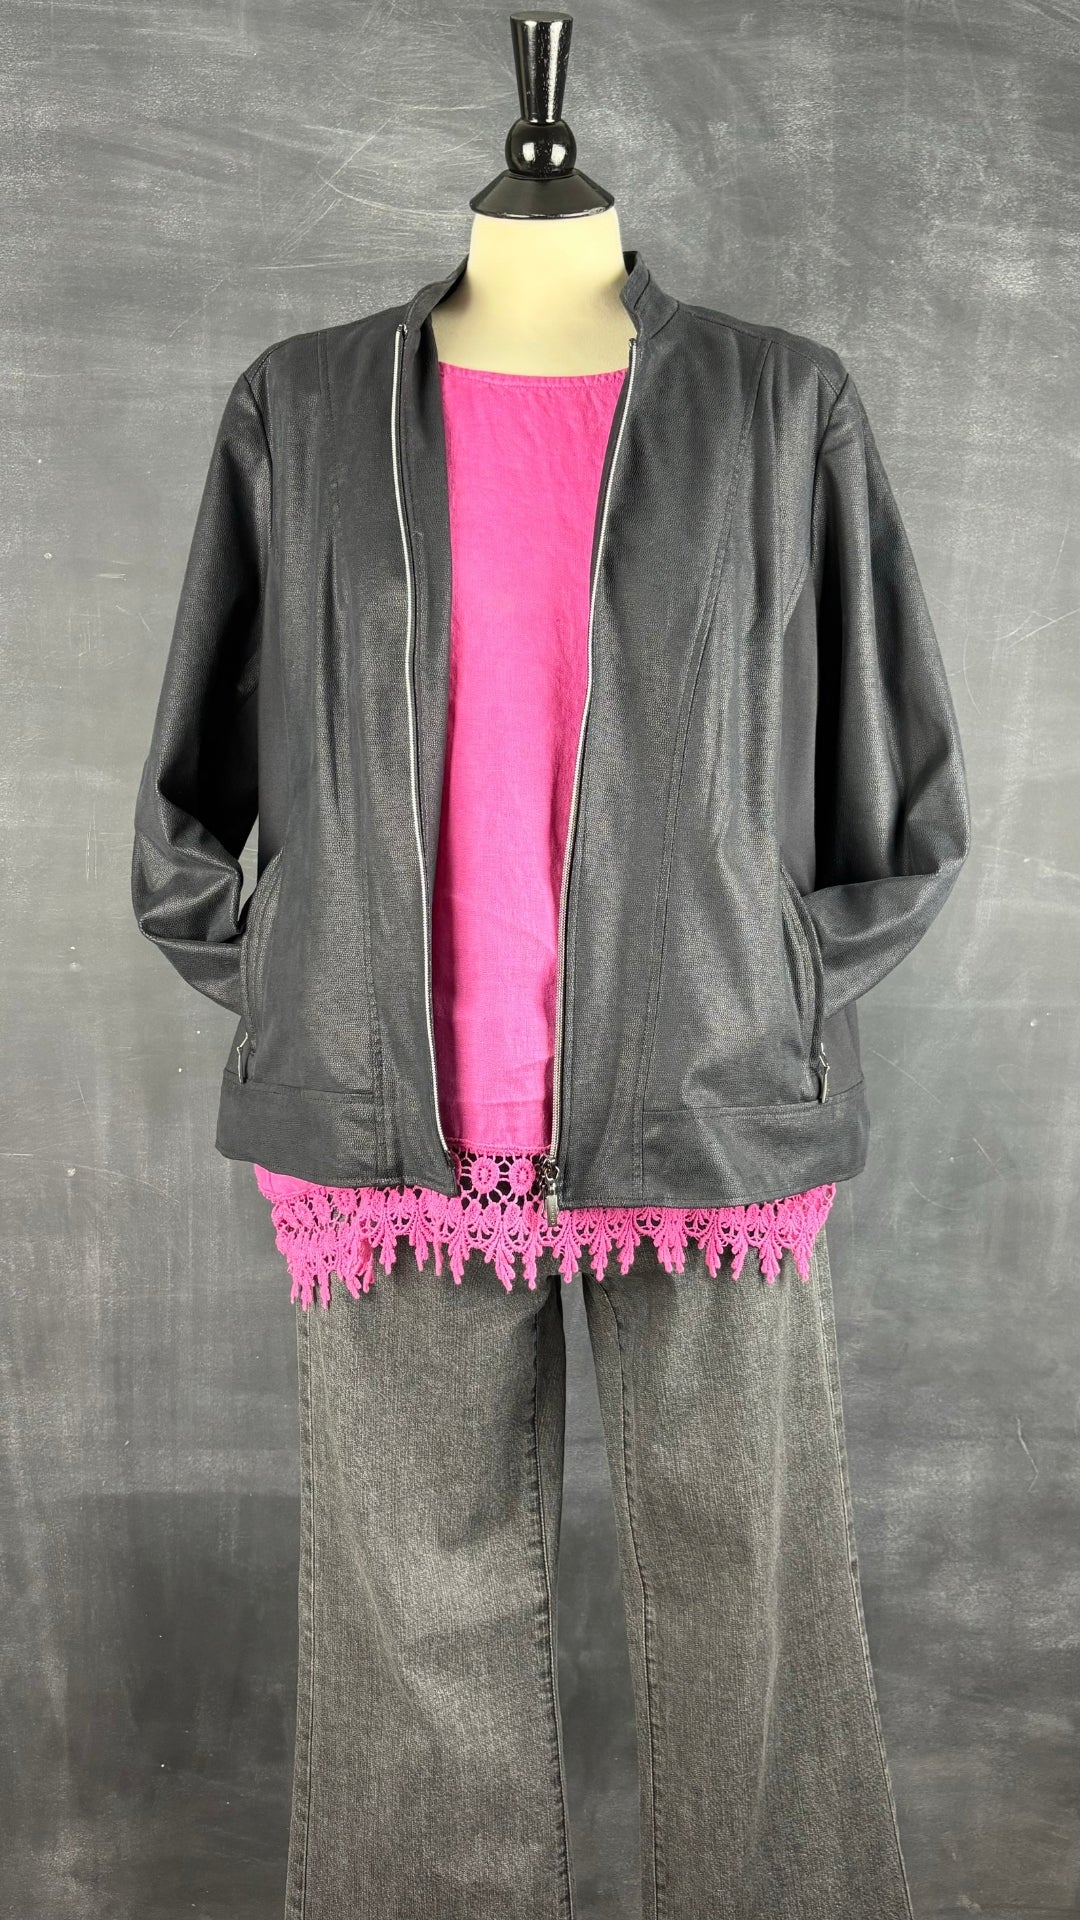 Camisole en lin rose avec ourlet en dentelle Terzo Millennio, taille large. Vue de l'agencement avec le jeans Luisa Cerano et le blouson Olsen.